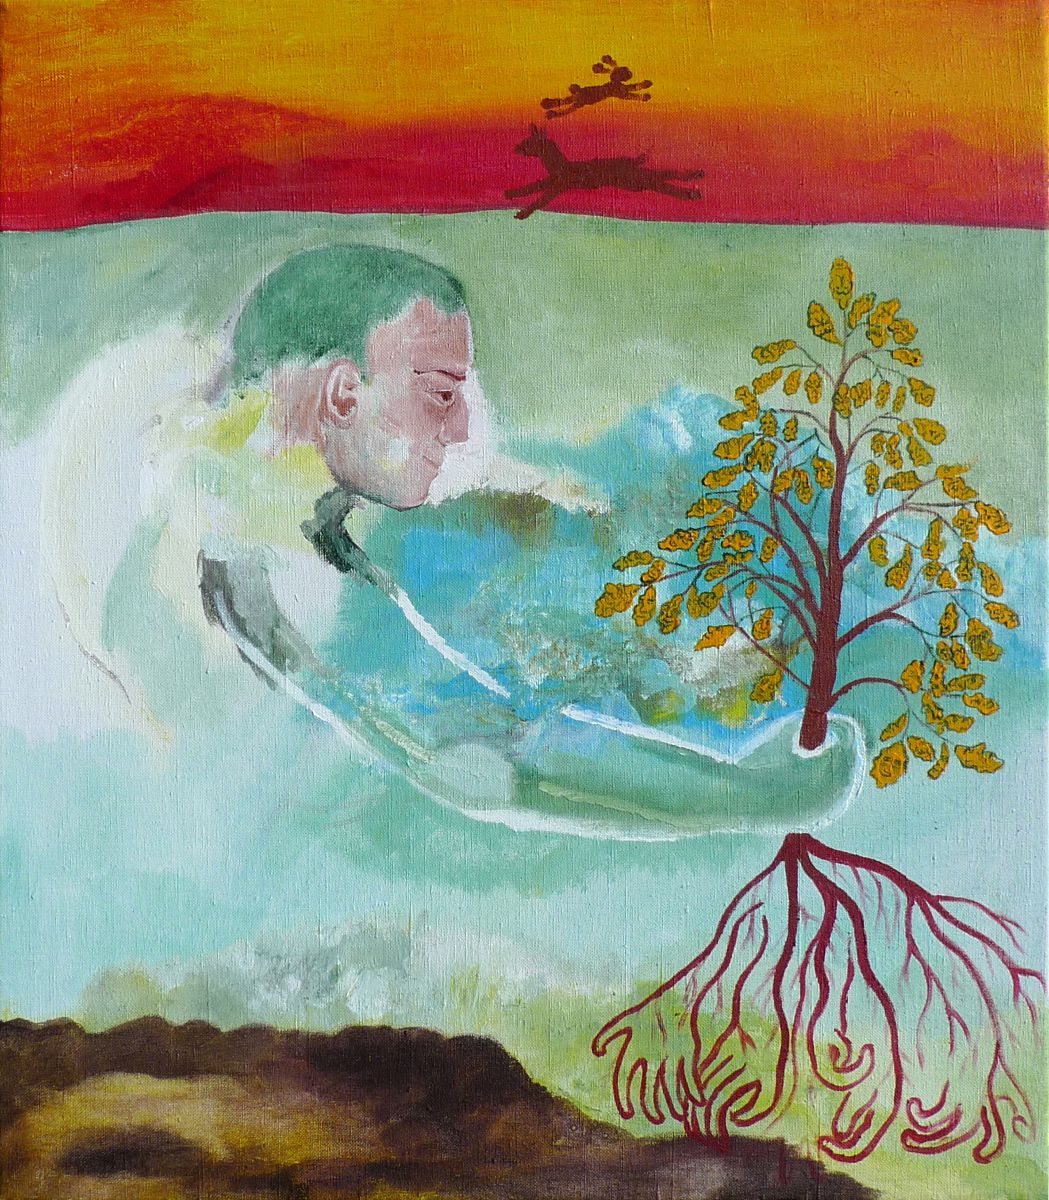 Jan Karpíšek: The Oak Tree Planting, acryl on canvas, 75x65 cm, 2011